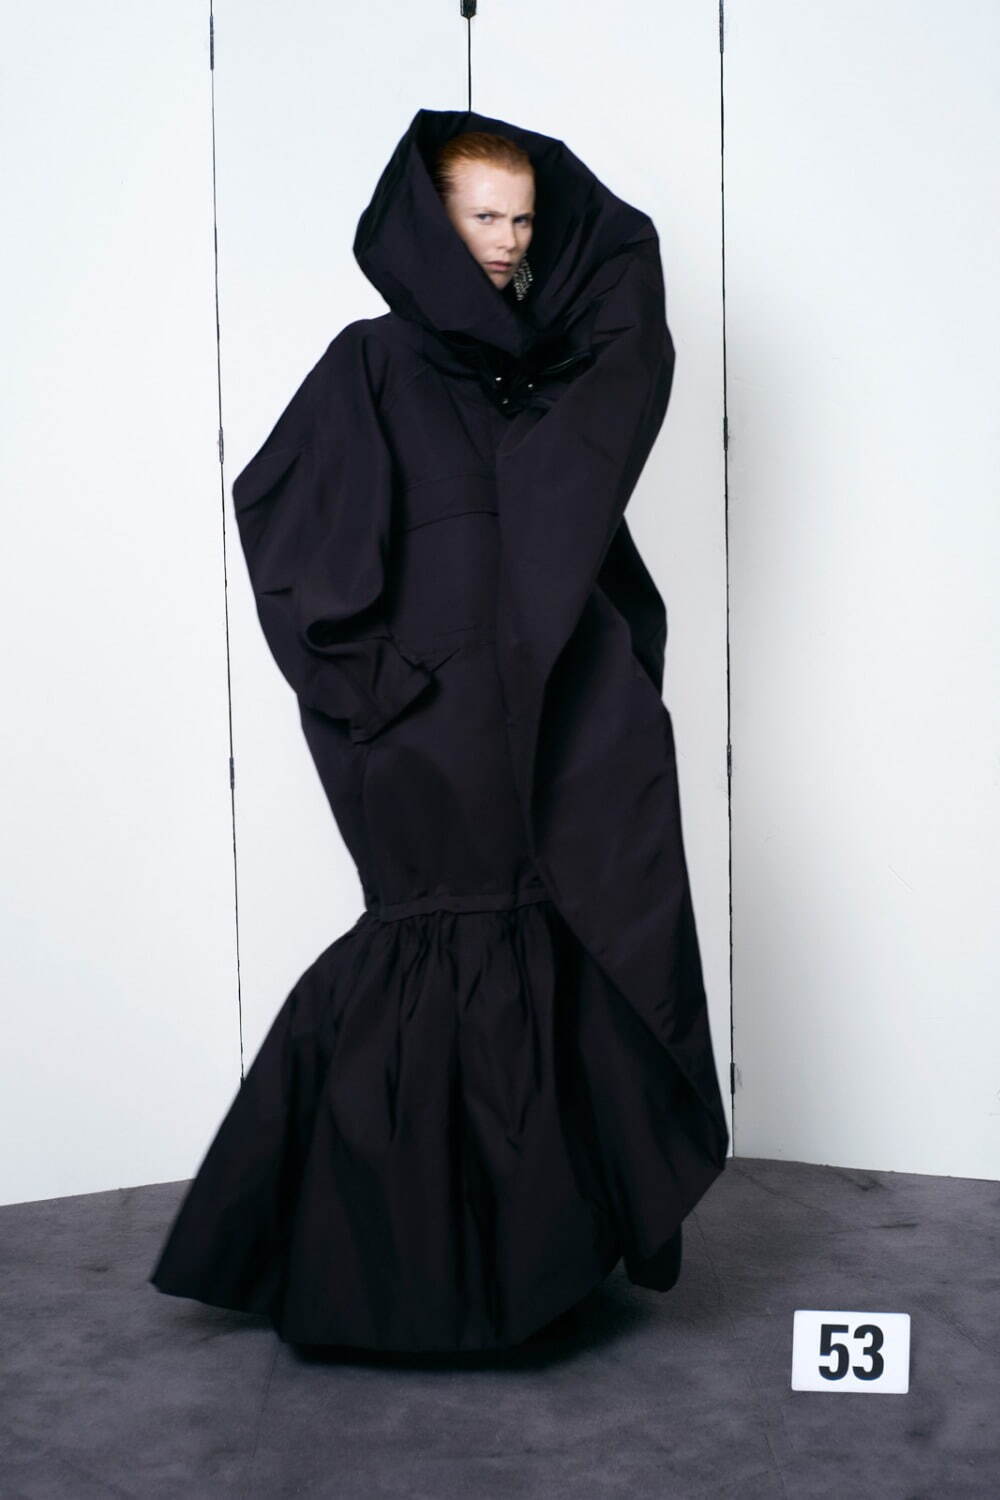 バレンシアガ クチュール(BALENCIAGA Couture ) 2021年冬ウィメンズ&メンズコレクション  - 写真53